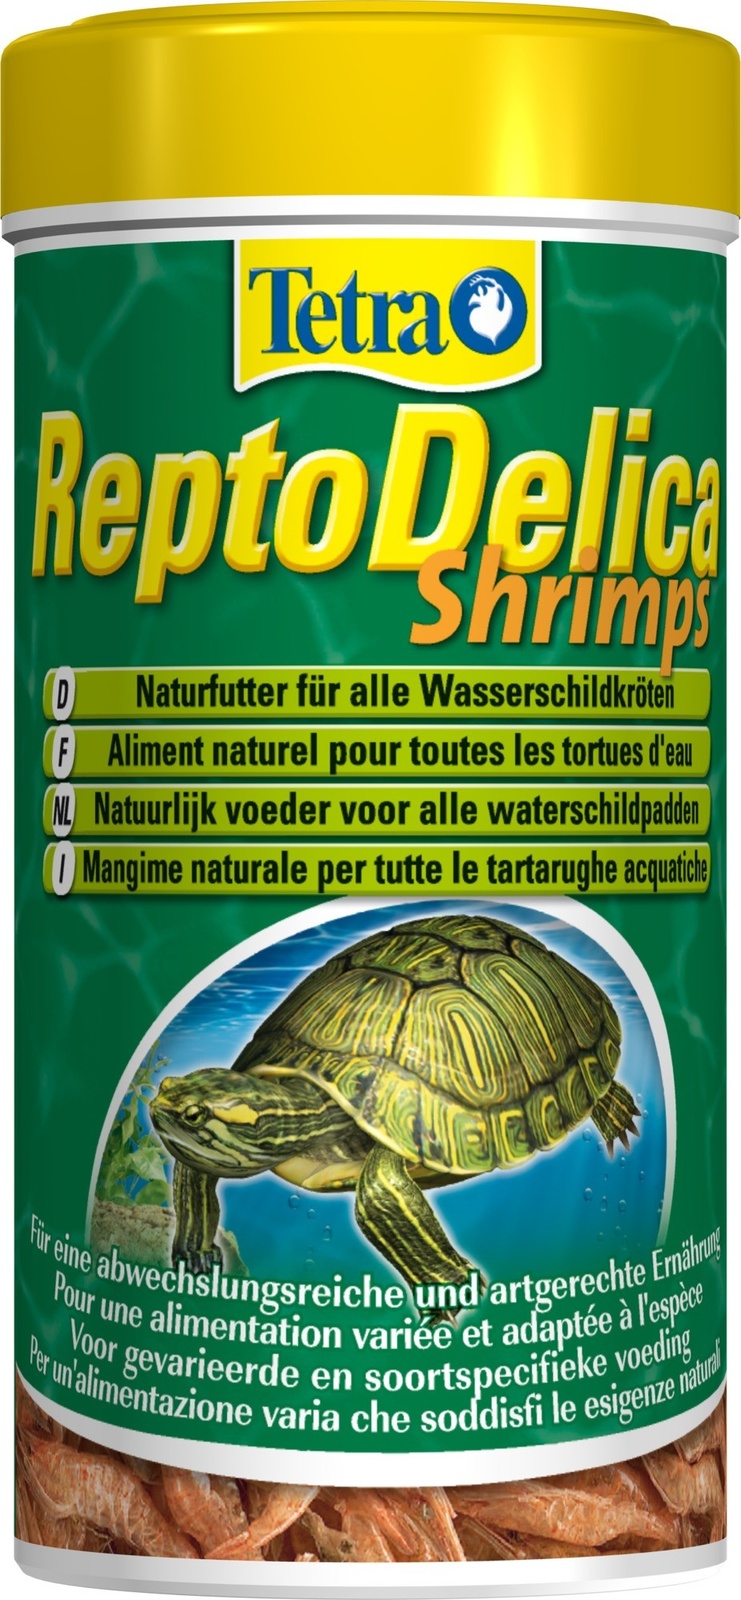 Tetra (корма) Tetra (корма) корм для водных черепах. креветки ReptoDelica Shrimps (20 г) лакомство tetra reptodelica grasshoppers для водных черепах кузнечики 250 мл